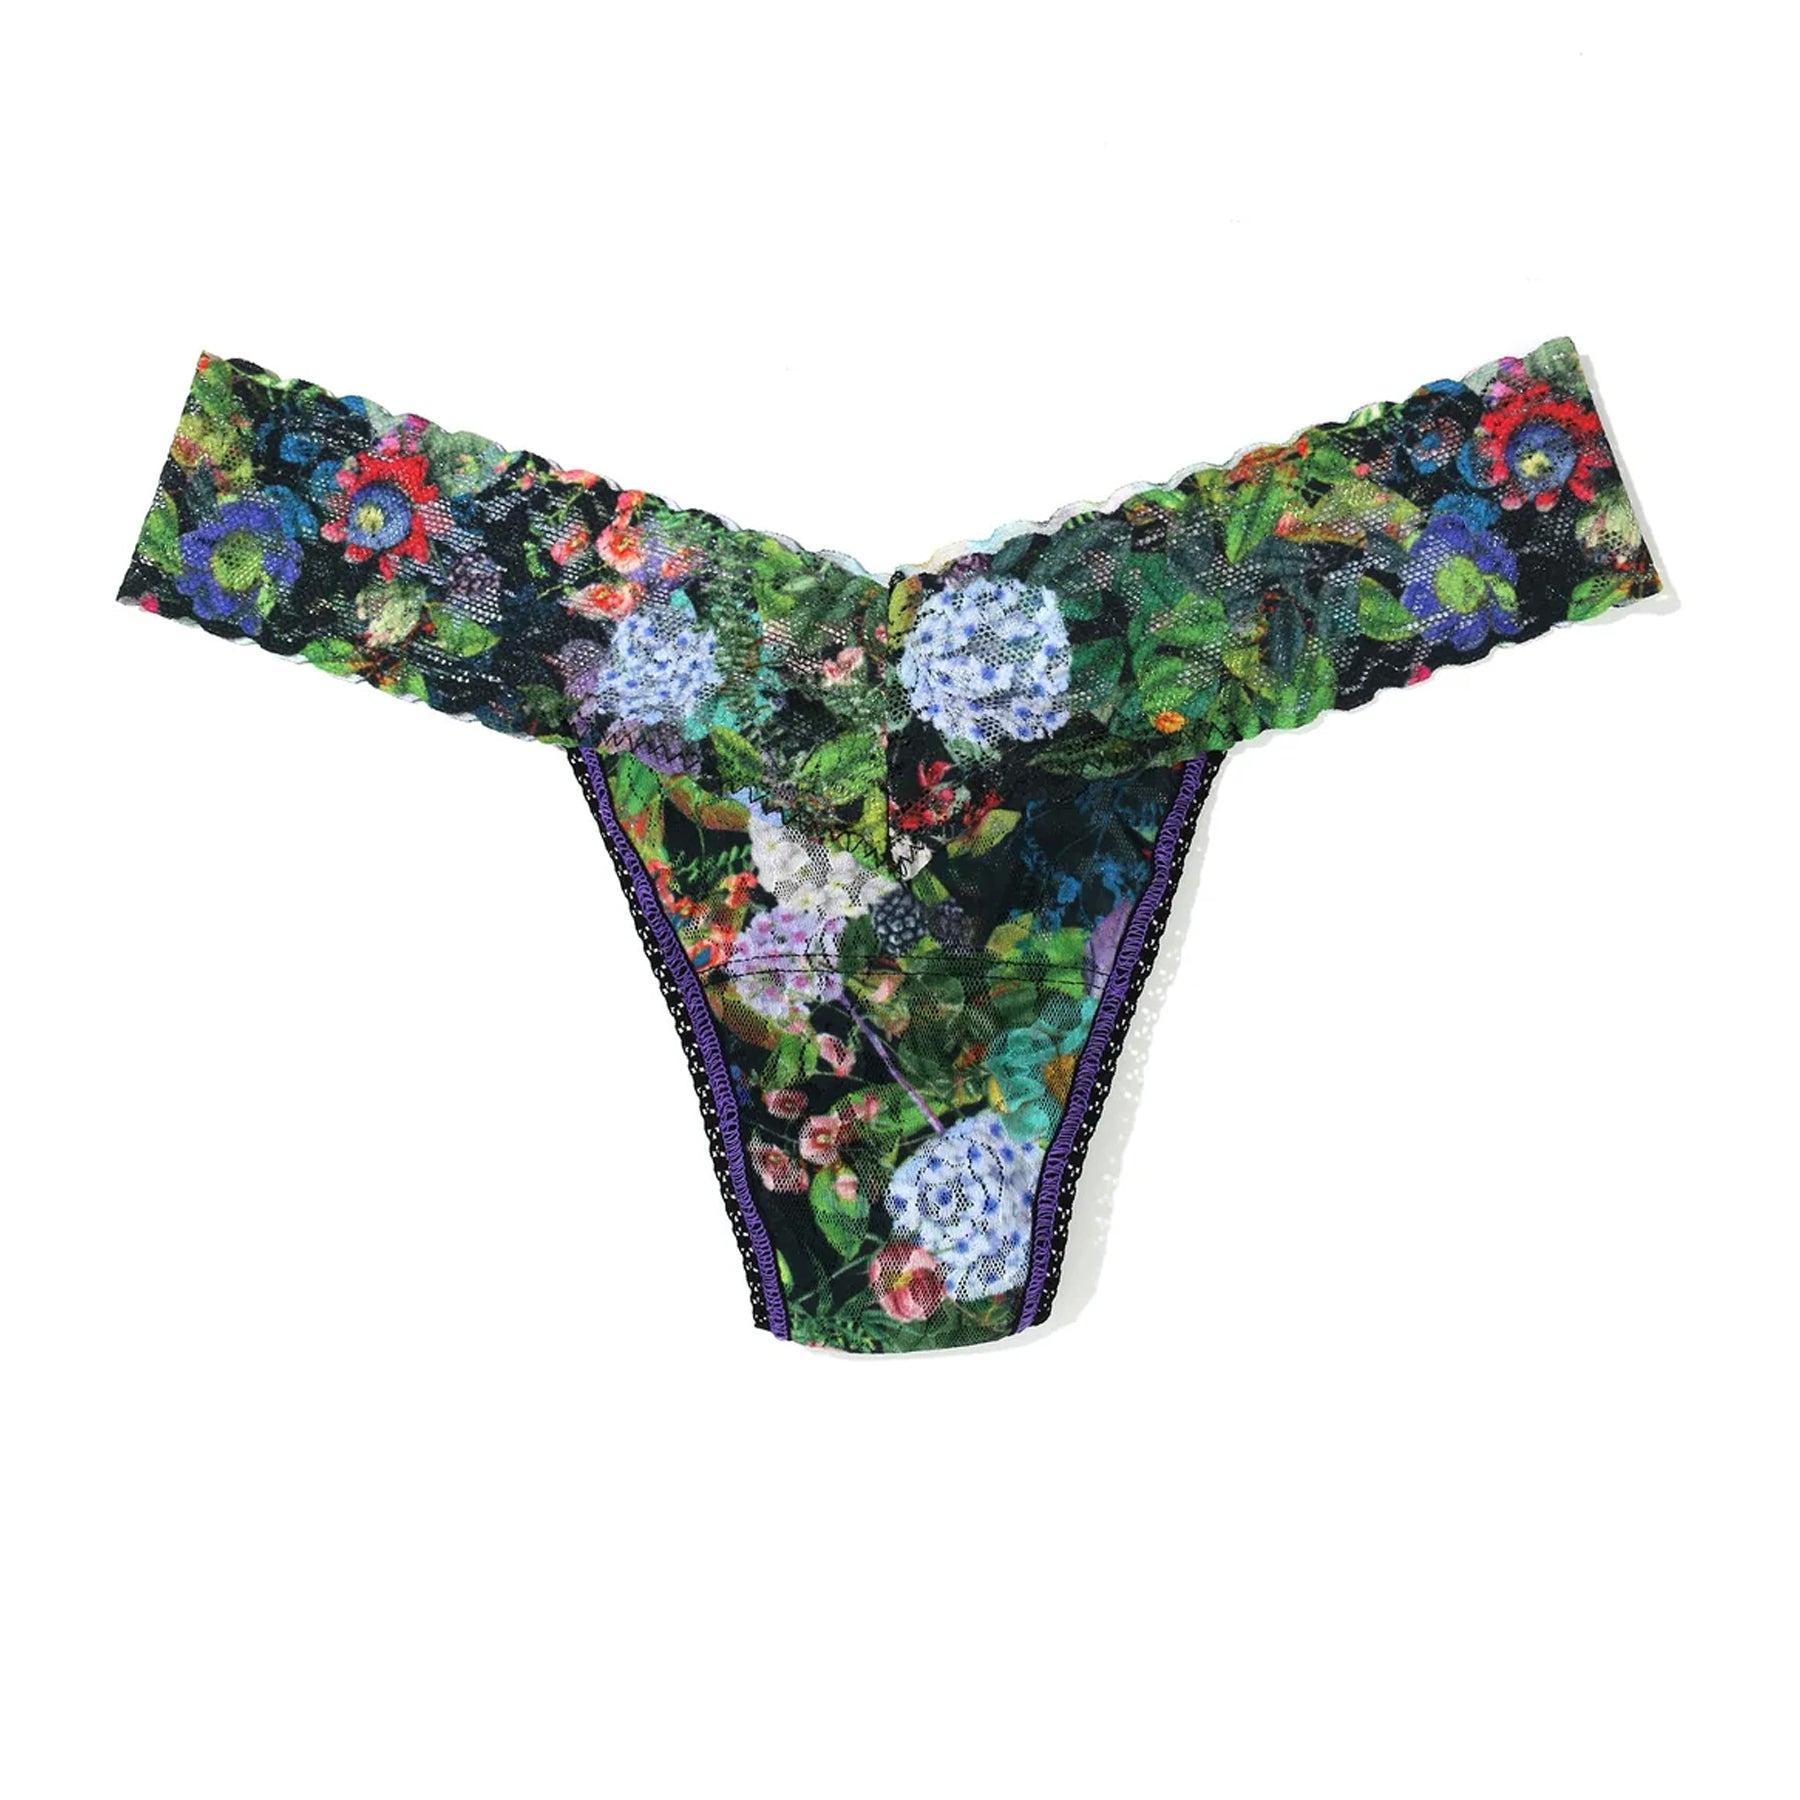  NEOXOL 5 Pack Ladies Silk Lace Handmade Underwear